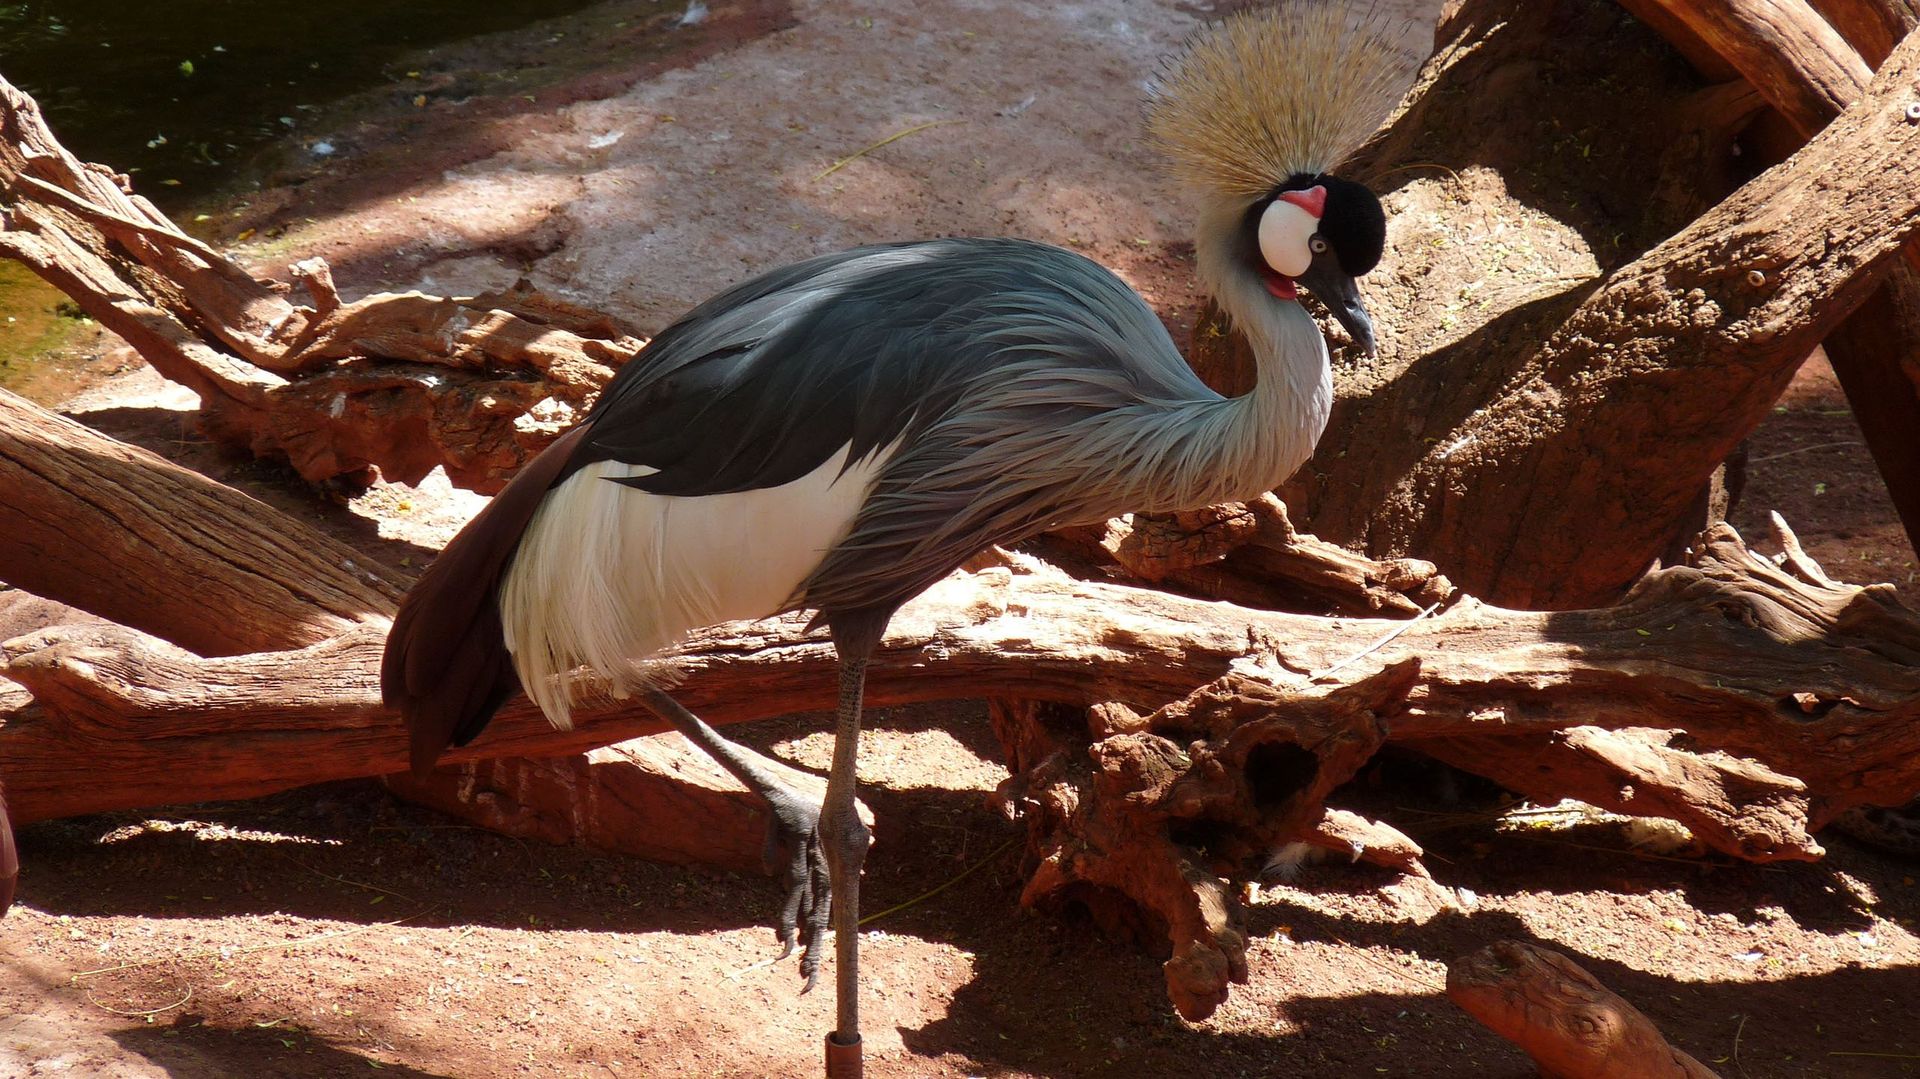 La grue couronnée est l’une des espèces d’oiseaux menacés dont le chant peut être entendu sur l’album "A Guide to the Birdsong of Western Africa".